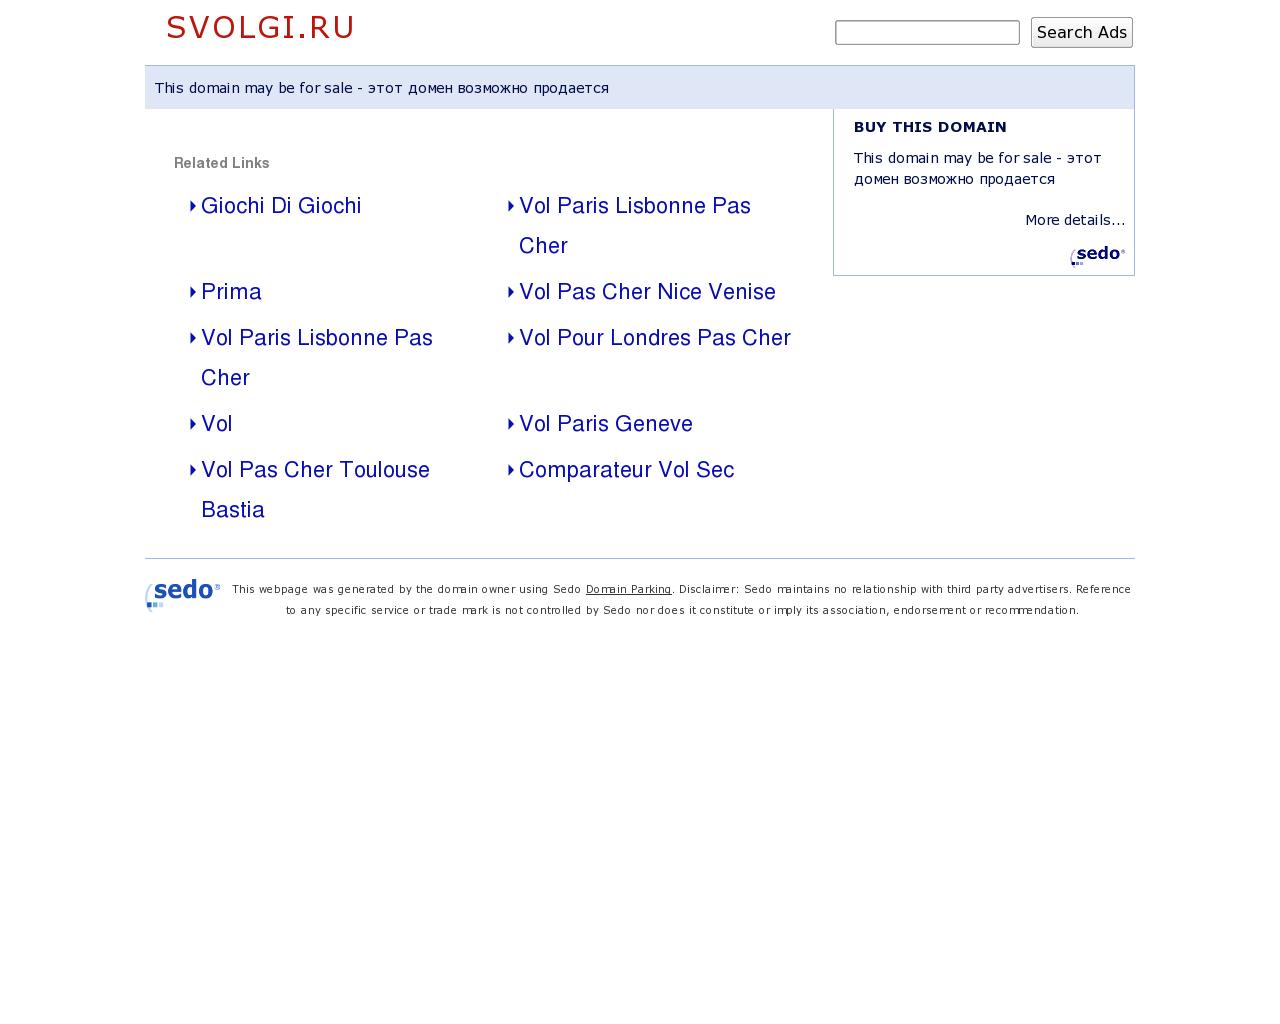 Изображение сайта svolgi.ru в разрешении 1280x1024